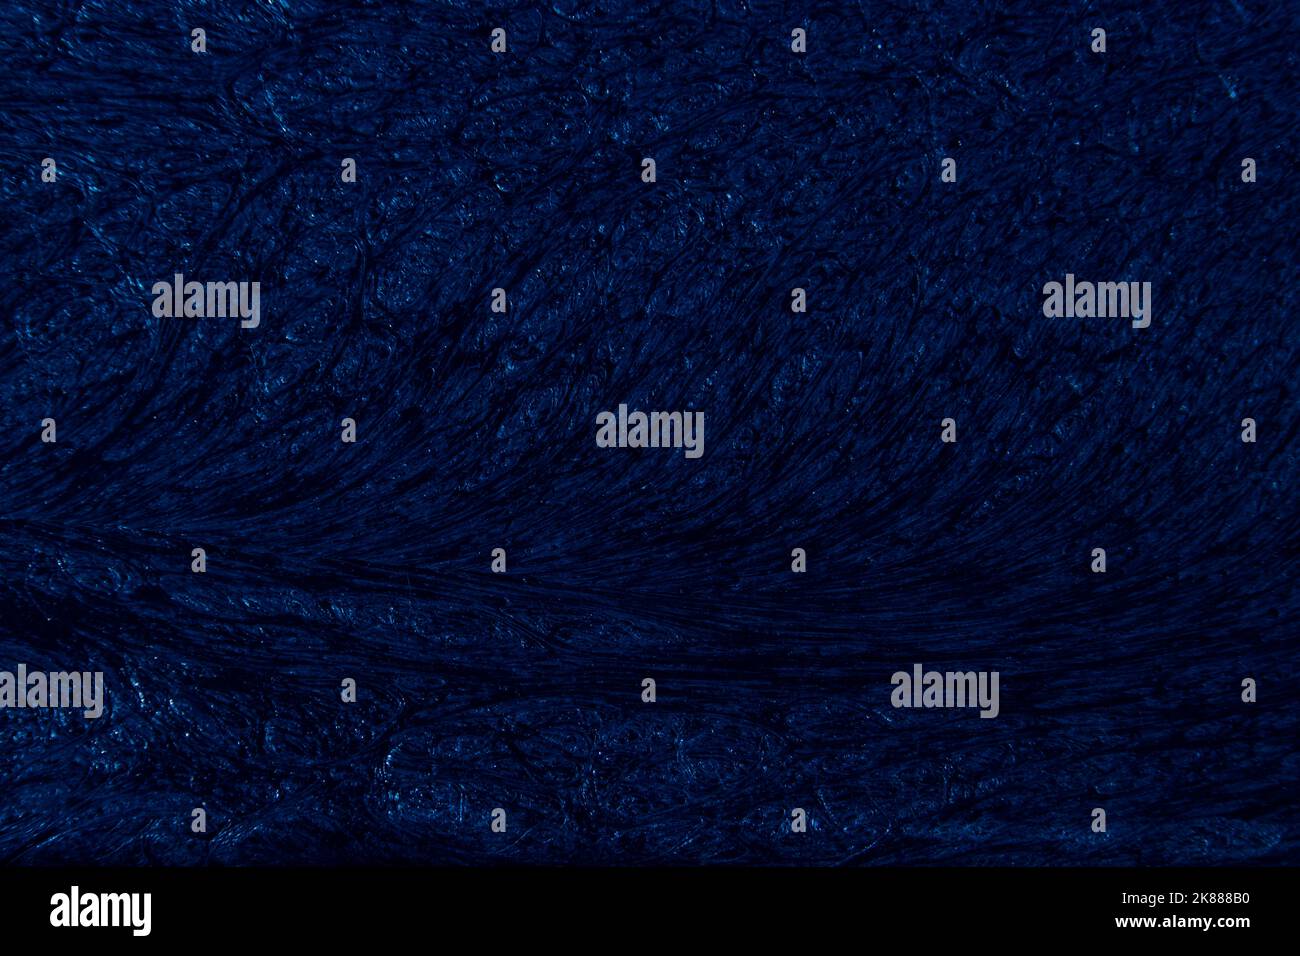 Sfondo di colore blu con texture ondulate di diverse sfumature di blu scuro Foto Stock